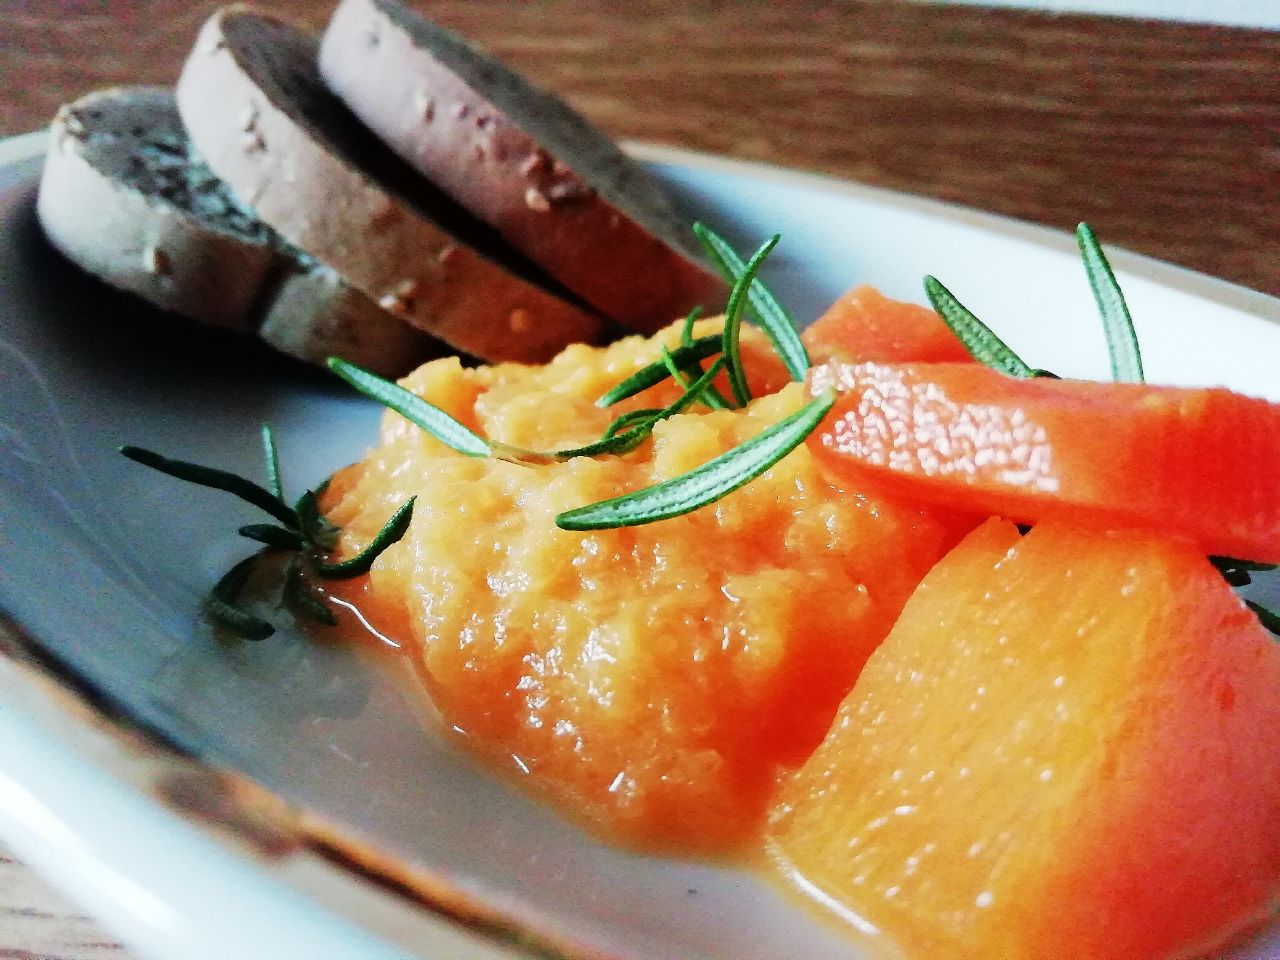 Ricette vegetariane semplici ed economiche: crema di zucca e carote al rosmarino!